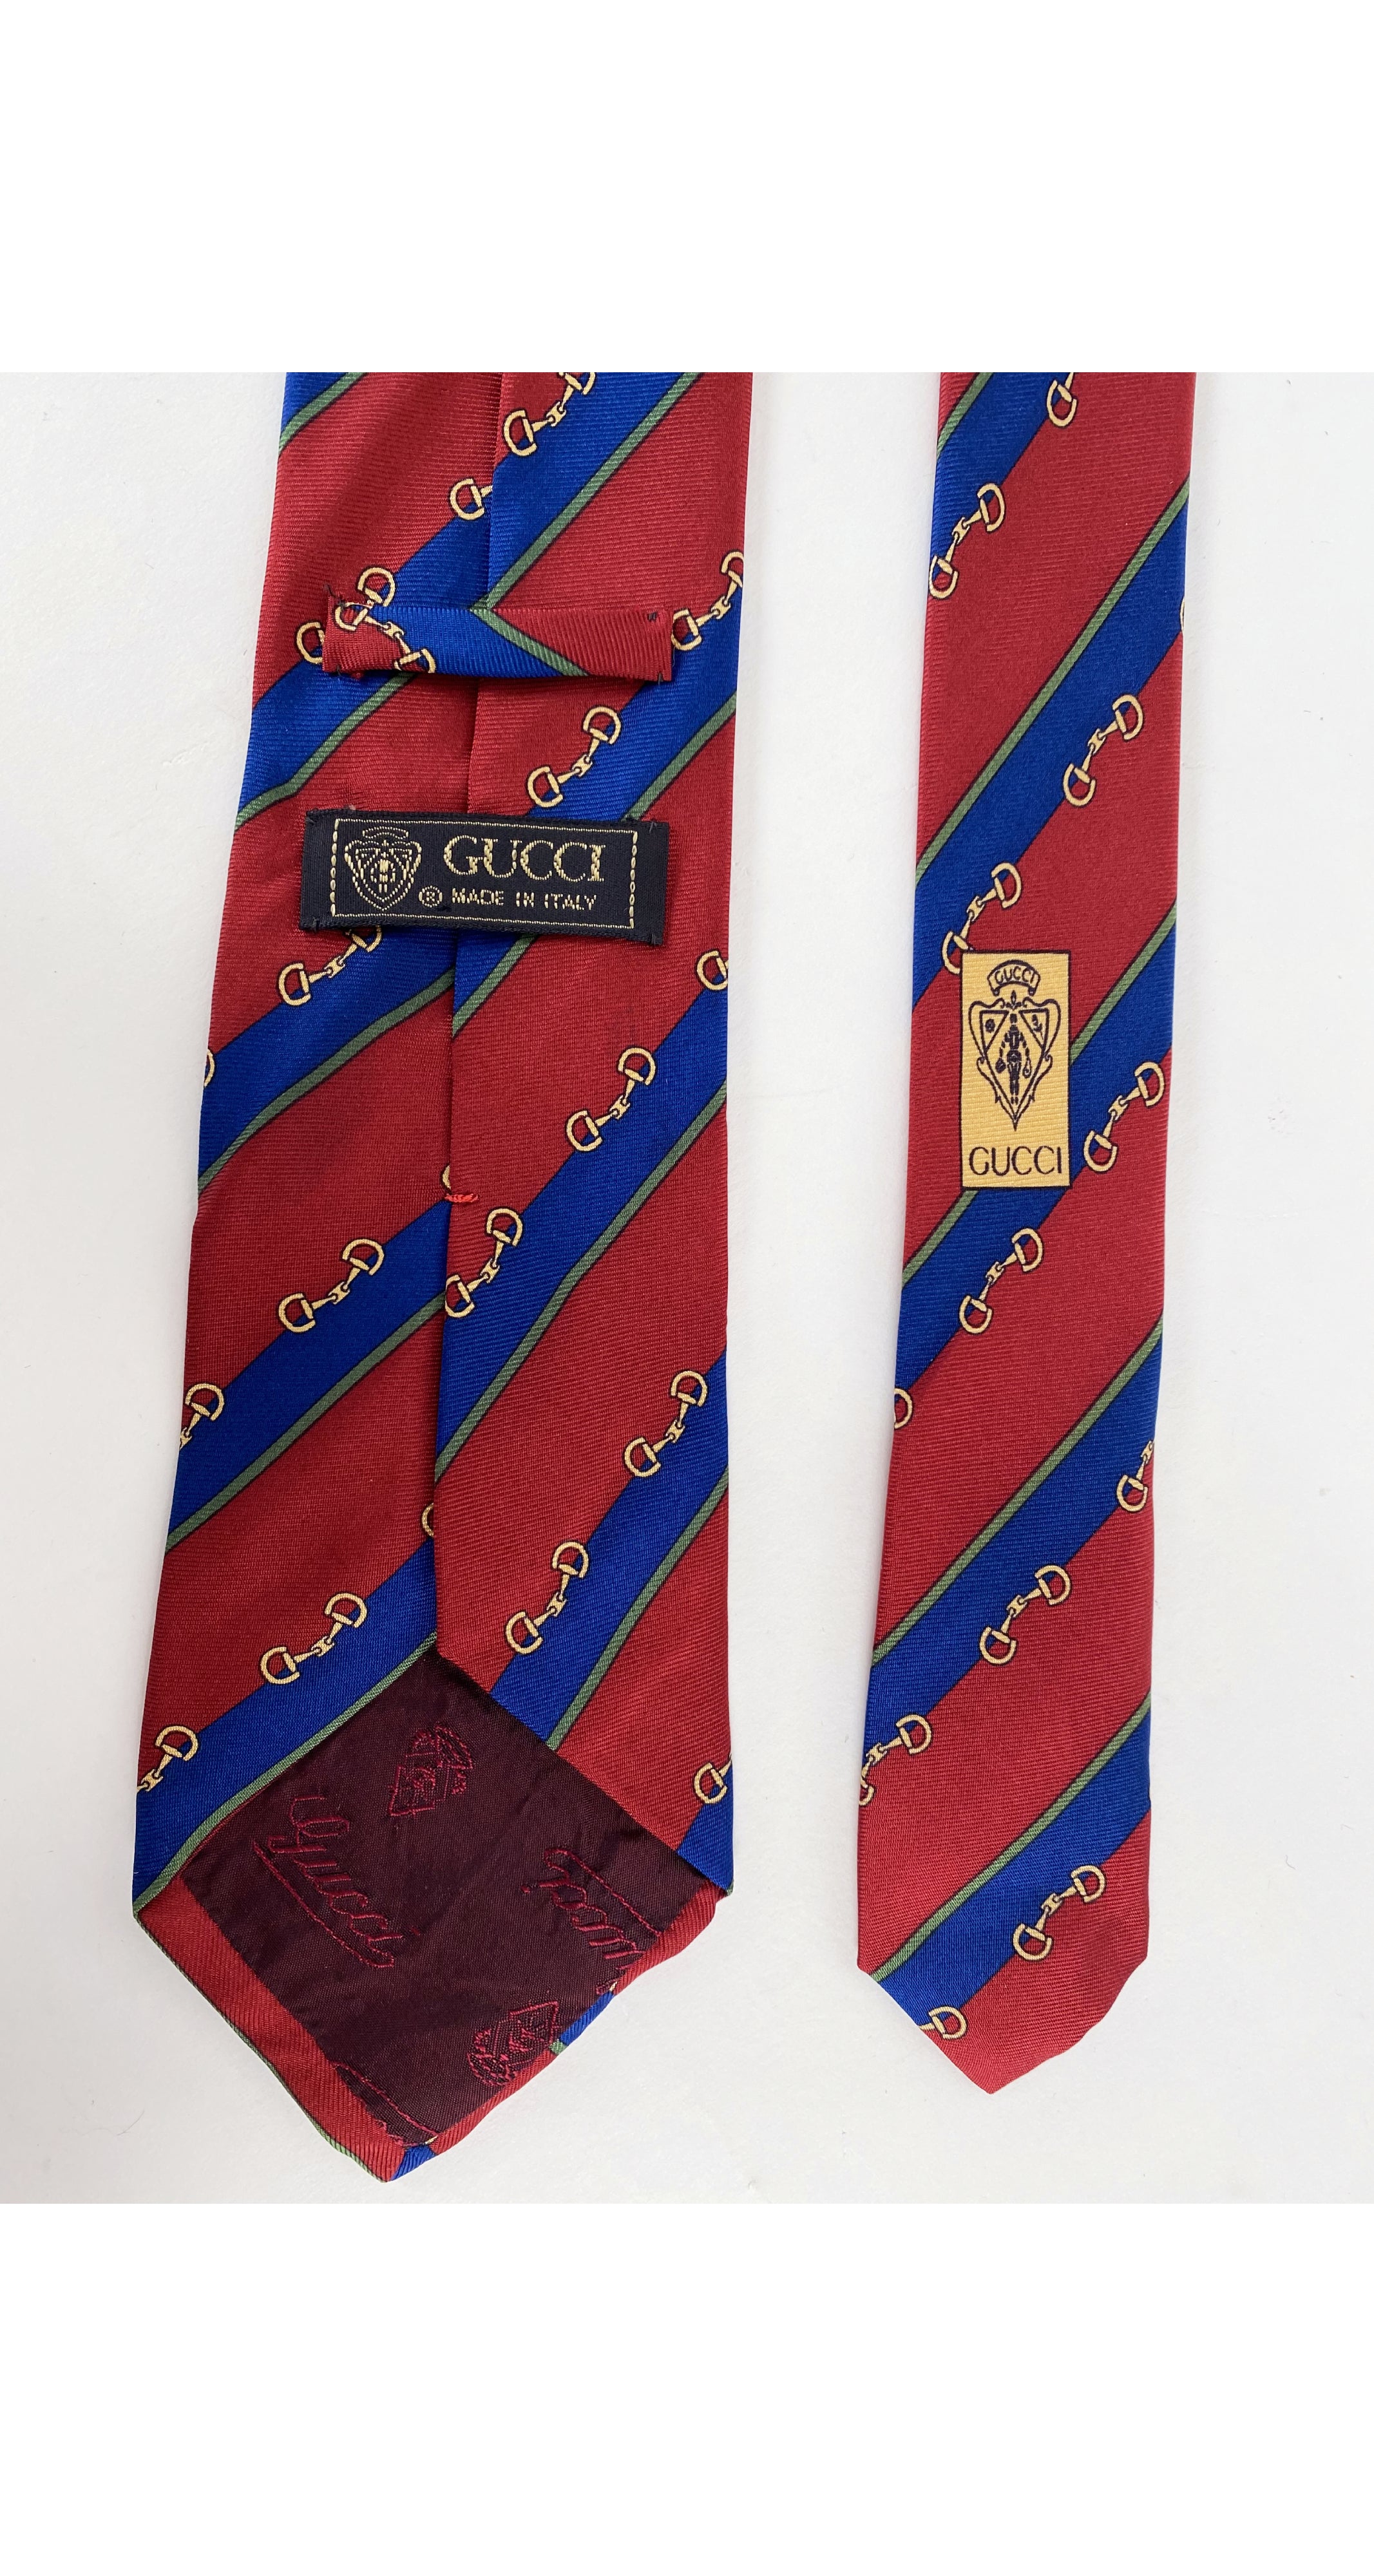 1980s Horsebit Red Green and Blue Silk Men's Tie